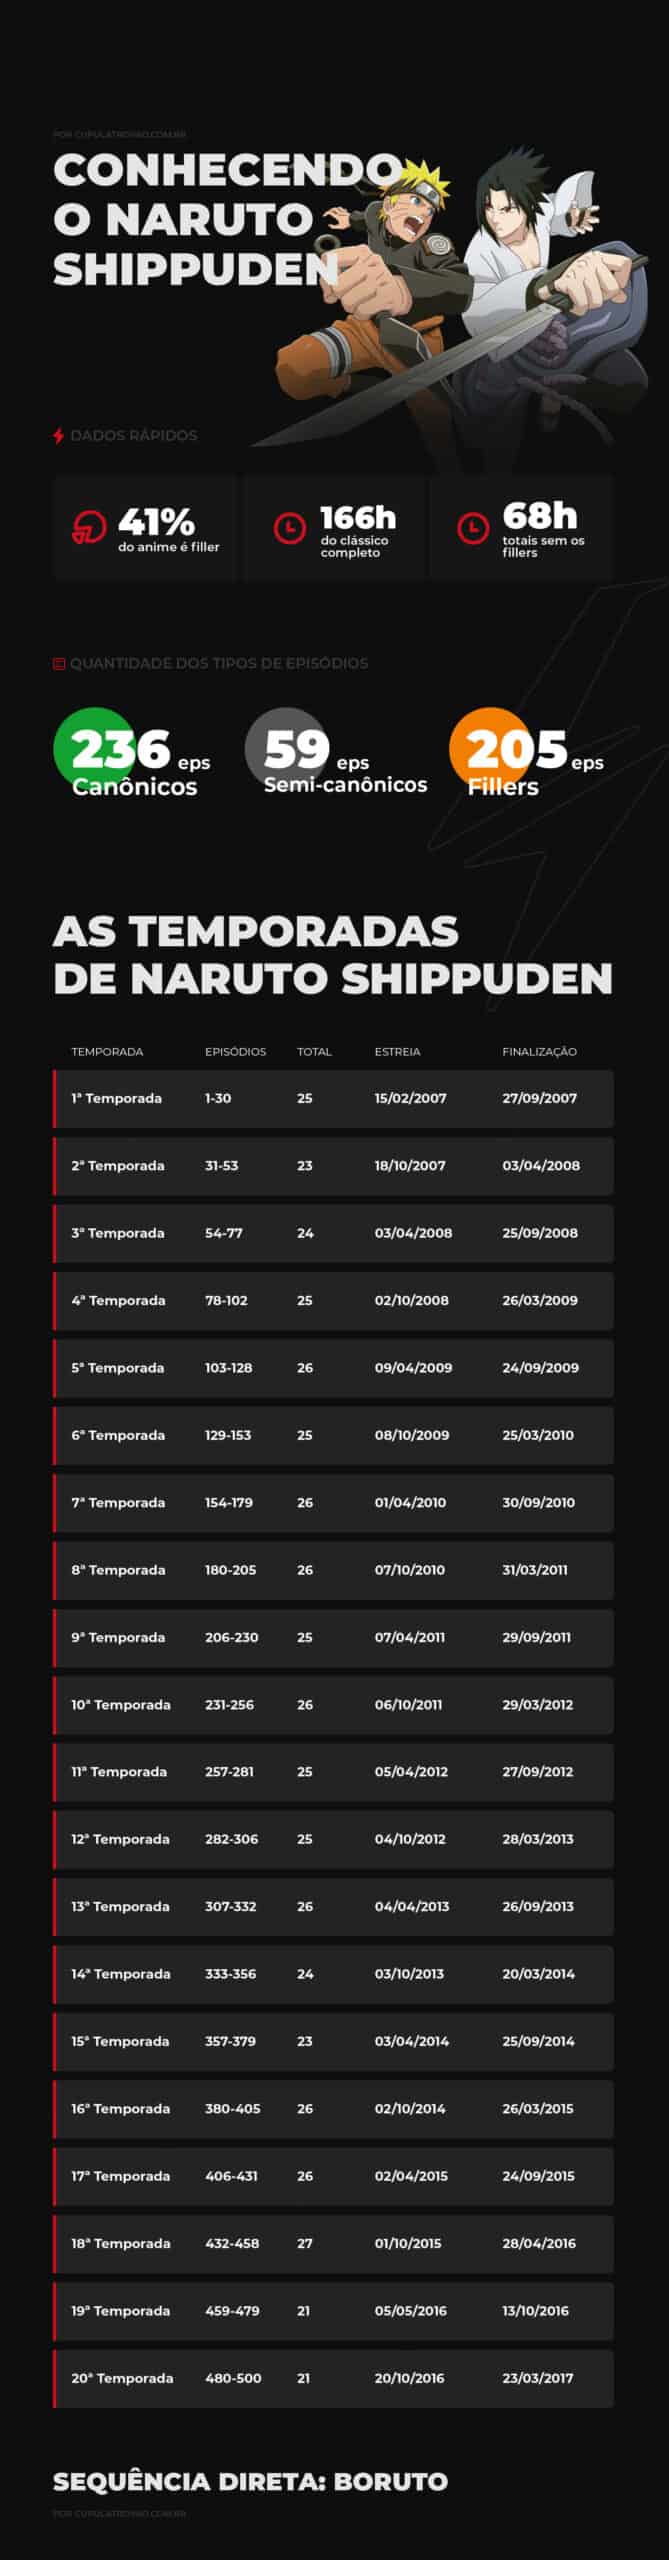 Fillers em Naruto Shippuden: saiba todos os fillers do anime (e quais ver)!